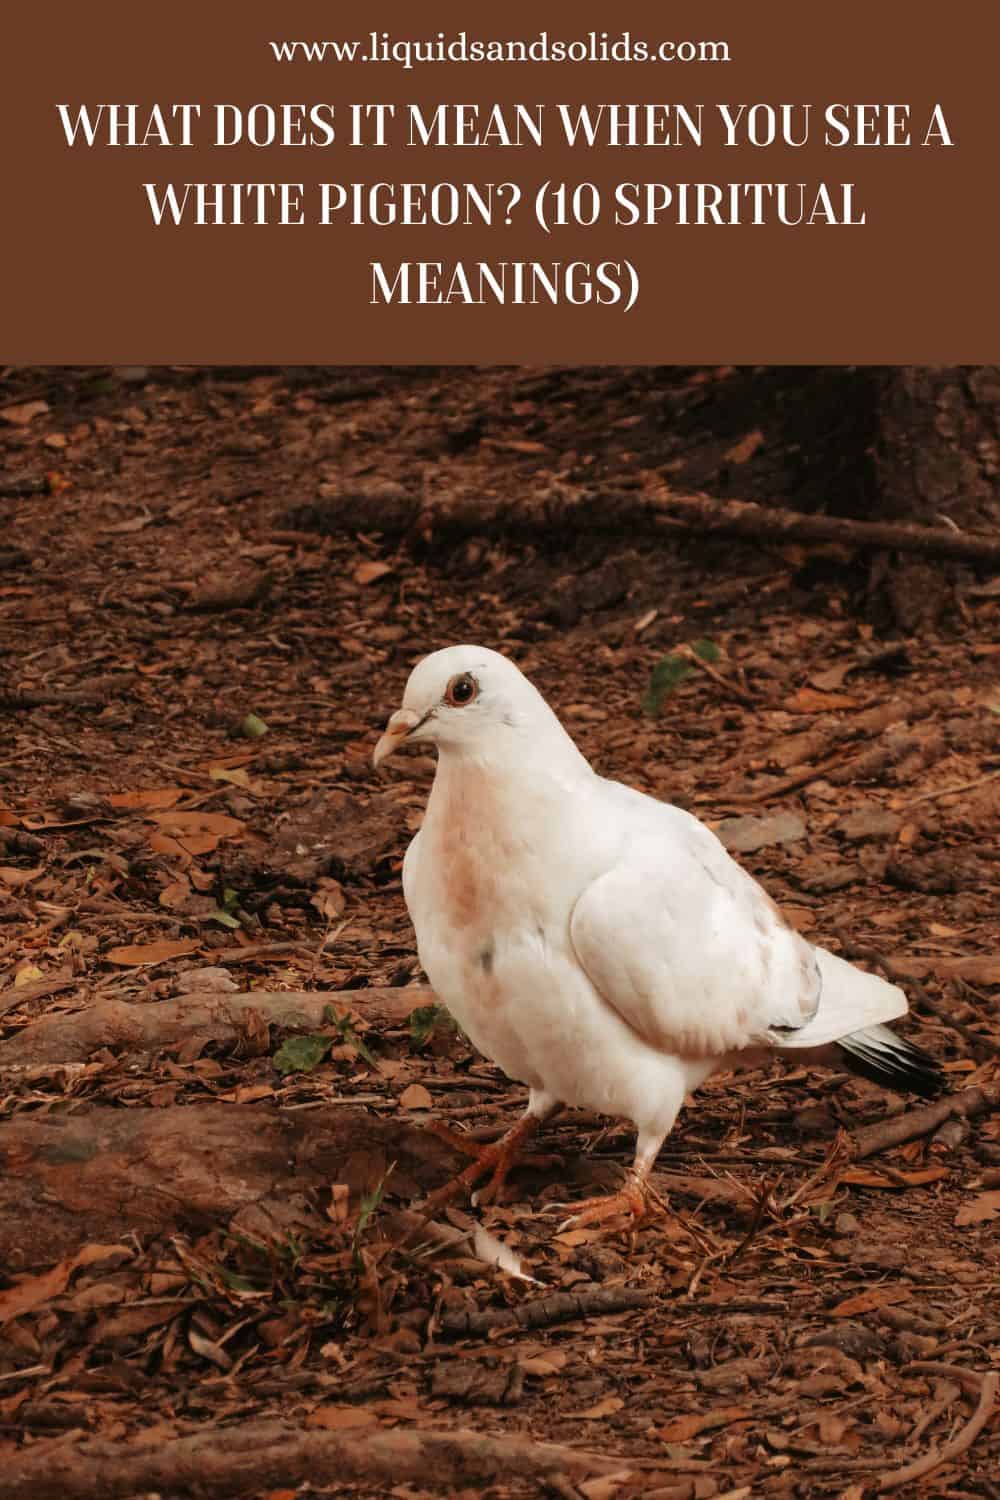  Ce que signifie voir un pigeon blanc (10 significations spirituelles)